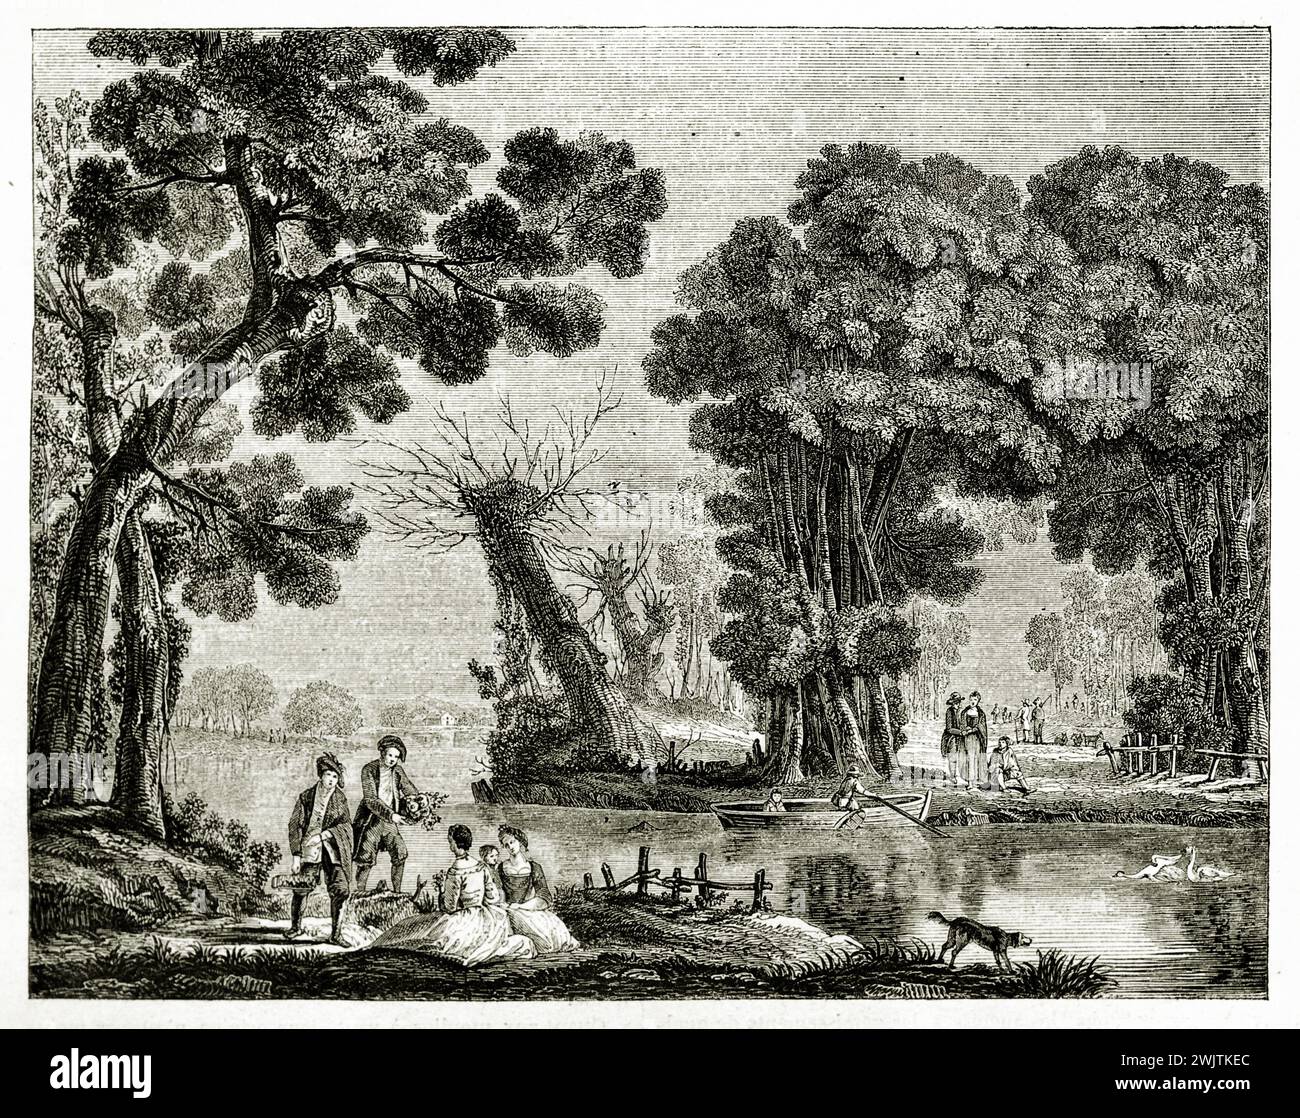 Vecchia illustrazione incisa del paesaggio fluviale. Dopo Jean-Baptiste Pillement, pubblicato su Magasin Pittoresque, Parigi, 1852 Foto Stock